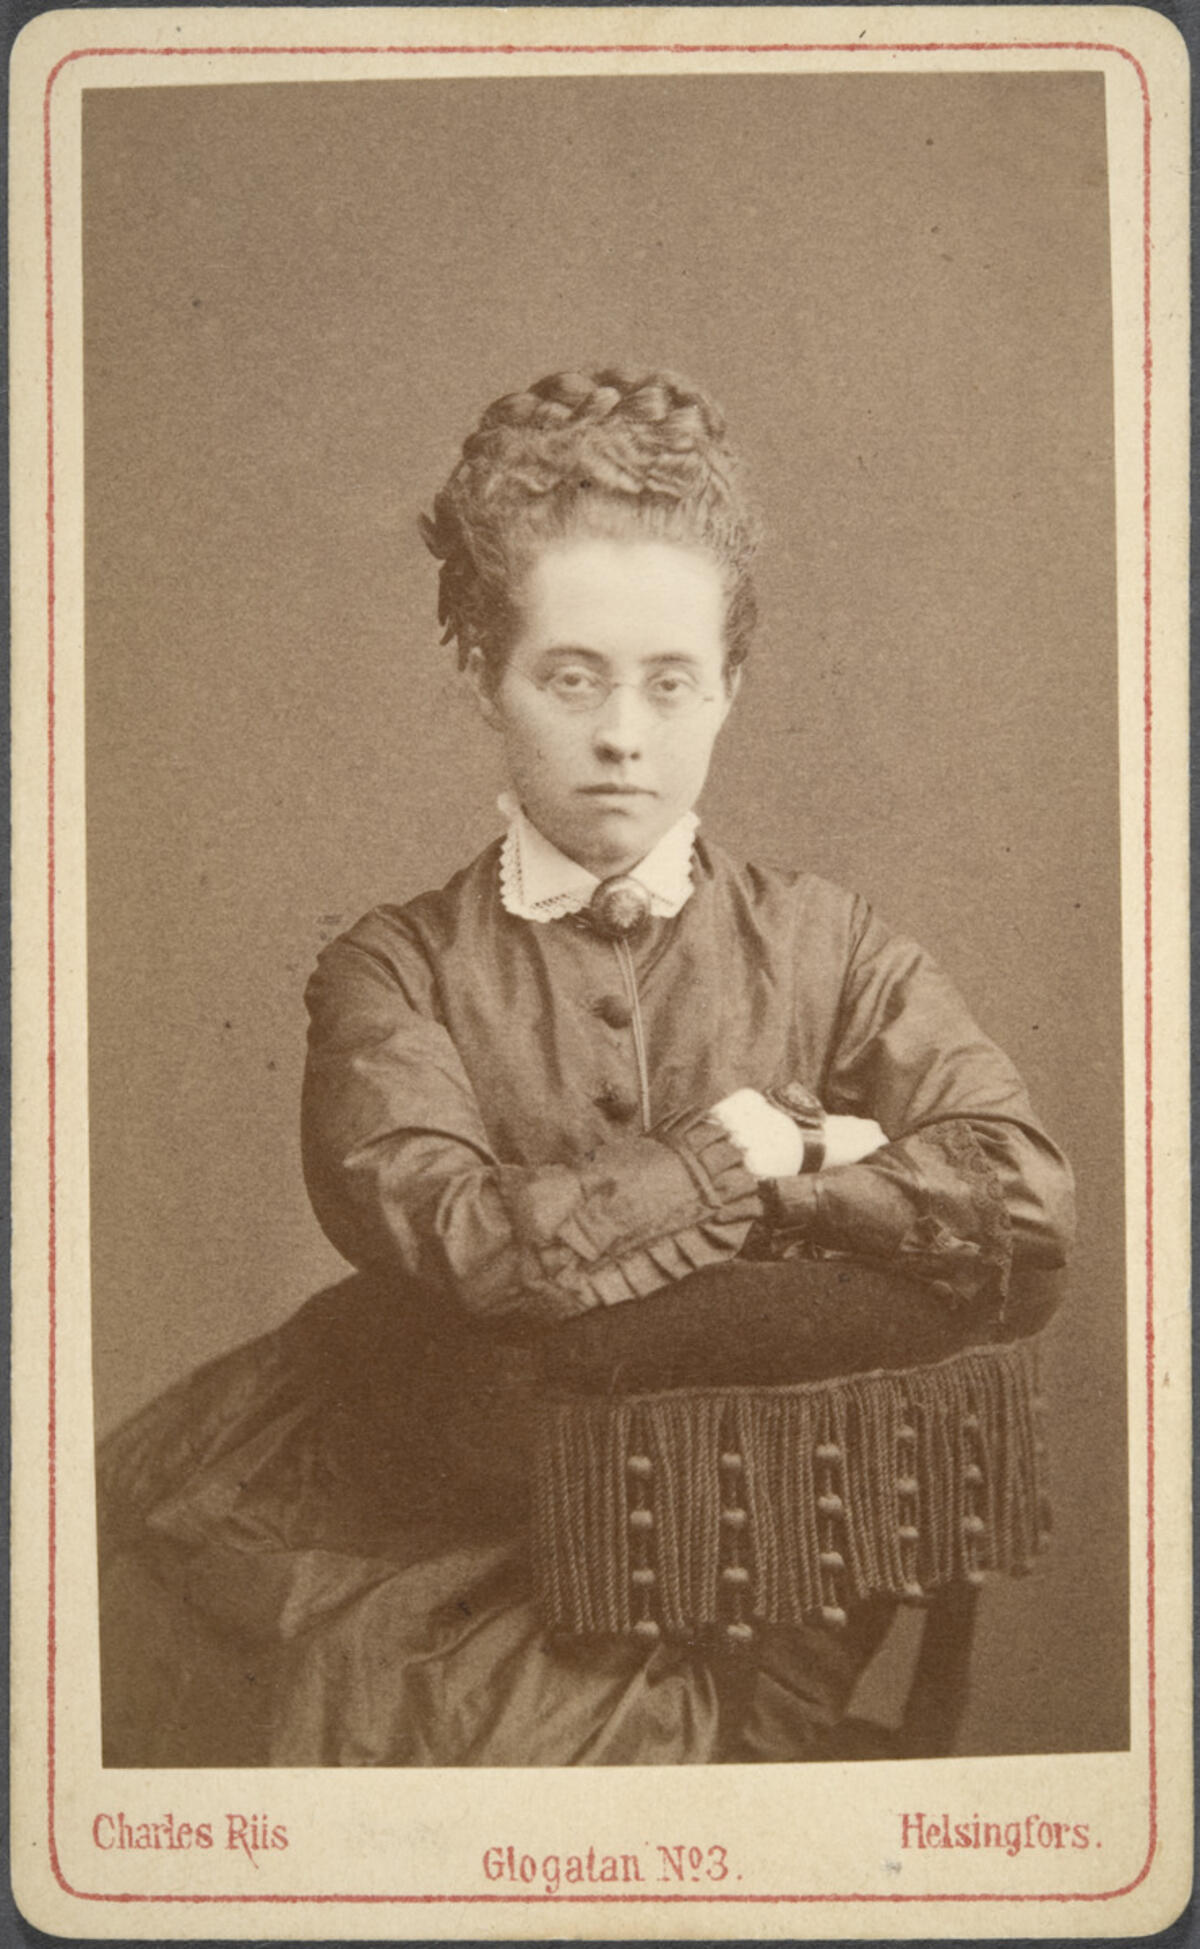 Alli Trygg utexaminerades som folksolelärarinna år 1874 med toppvitsord. Hon blev sedermera en betydande påverkare. Foto: Museiverket / Charles Riis